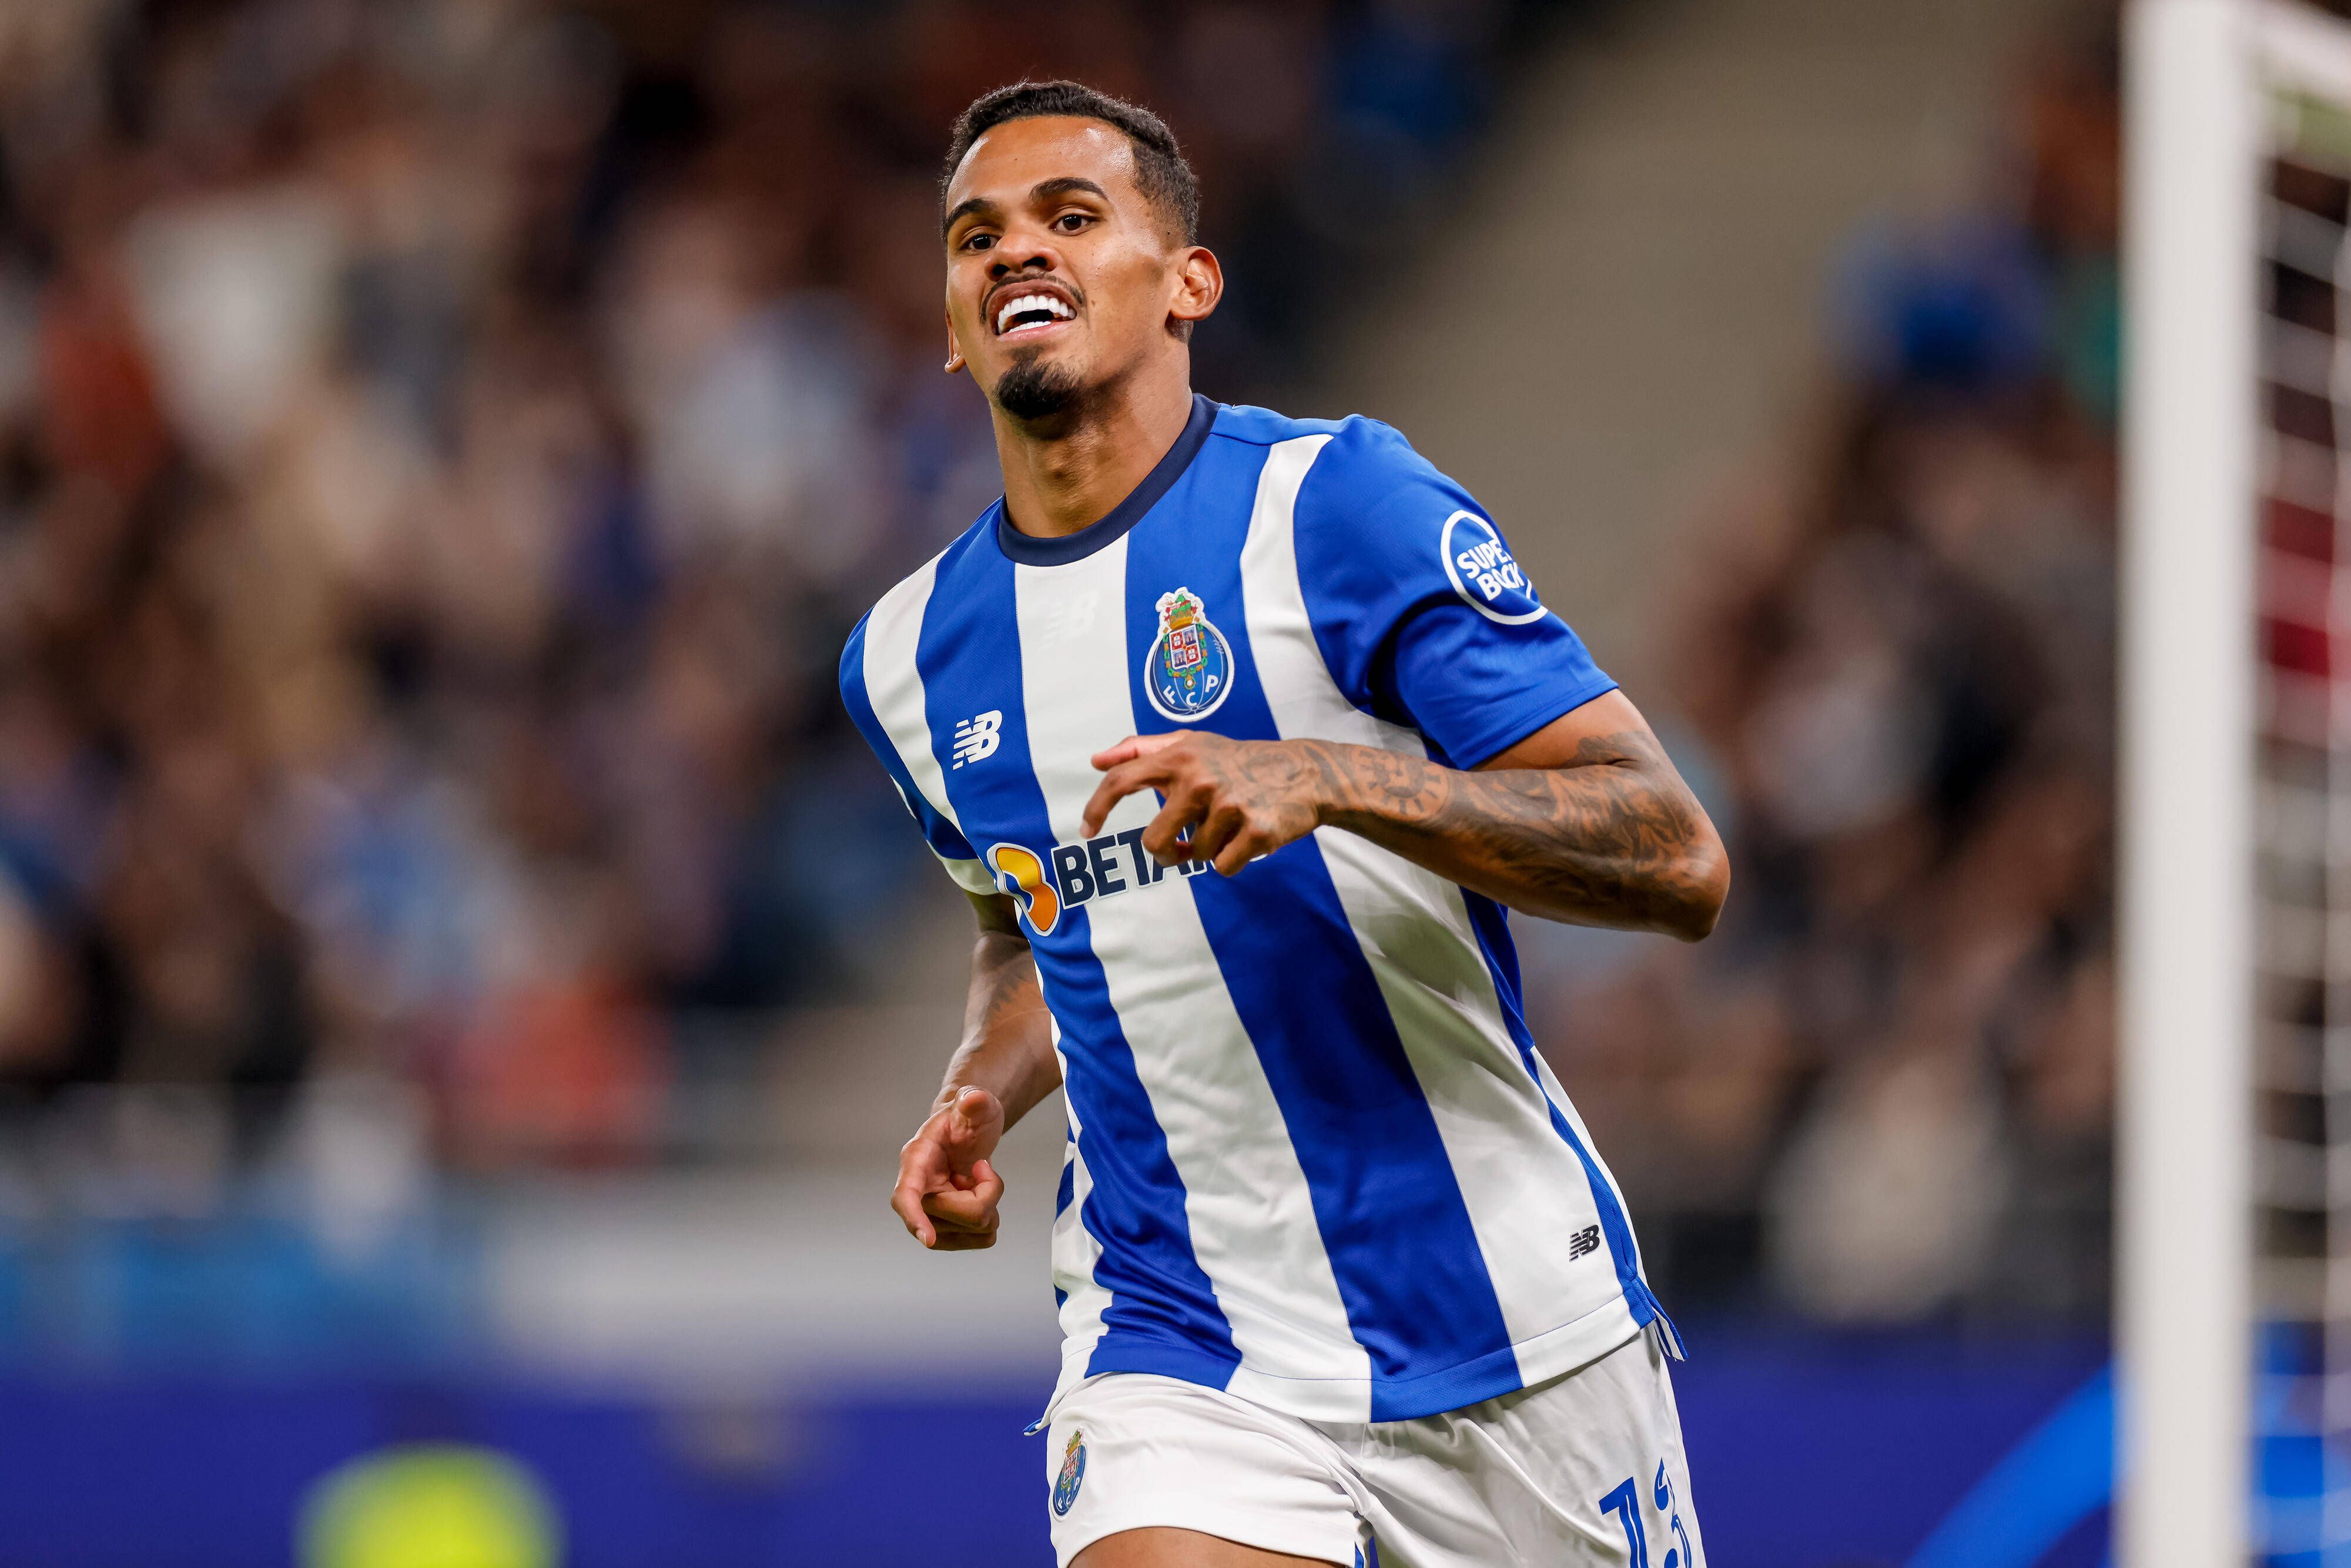 Destaques do FC Porto: a noite em que Galeno despachou o assunto num instante